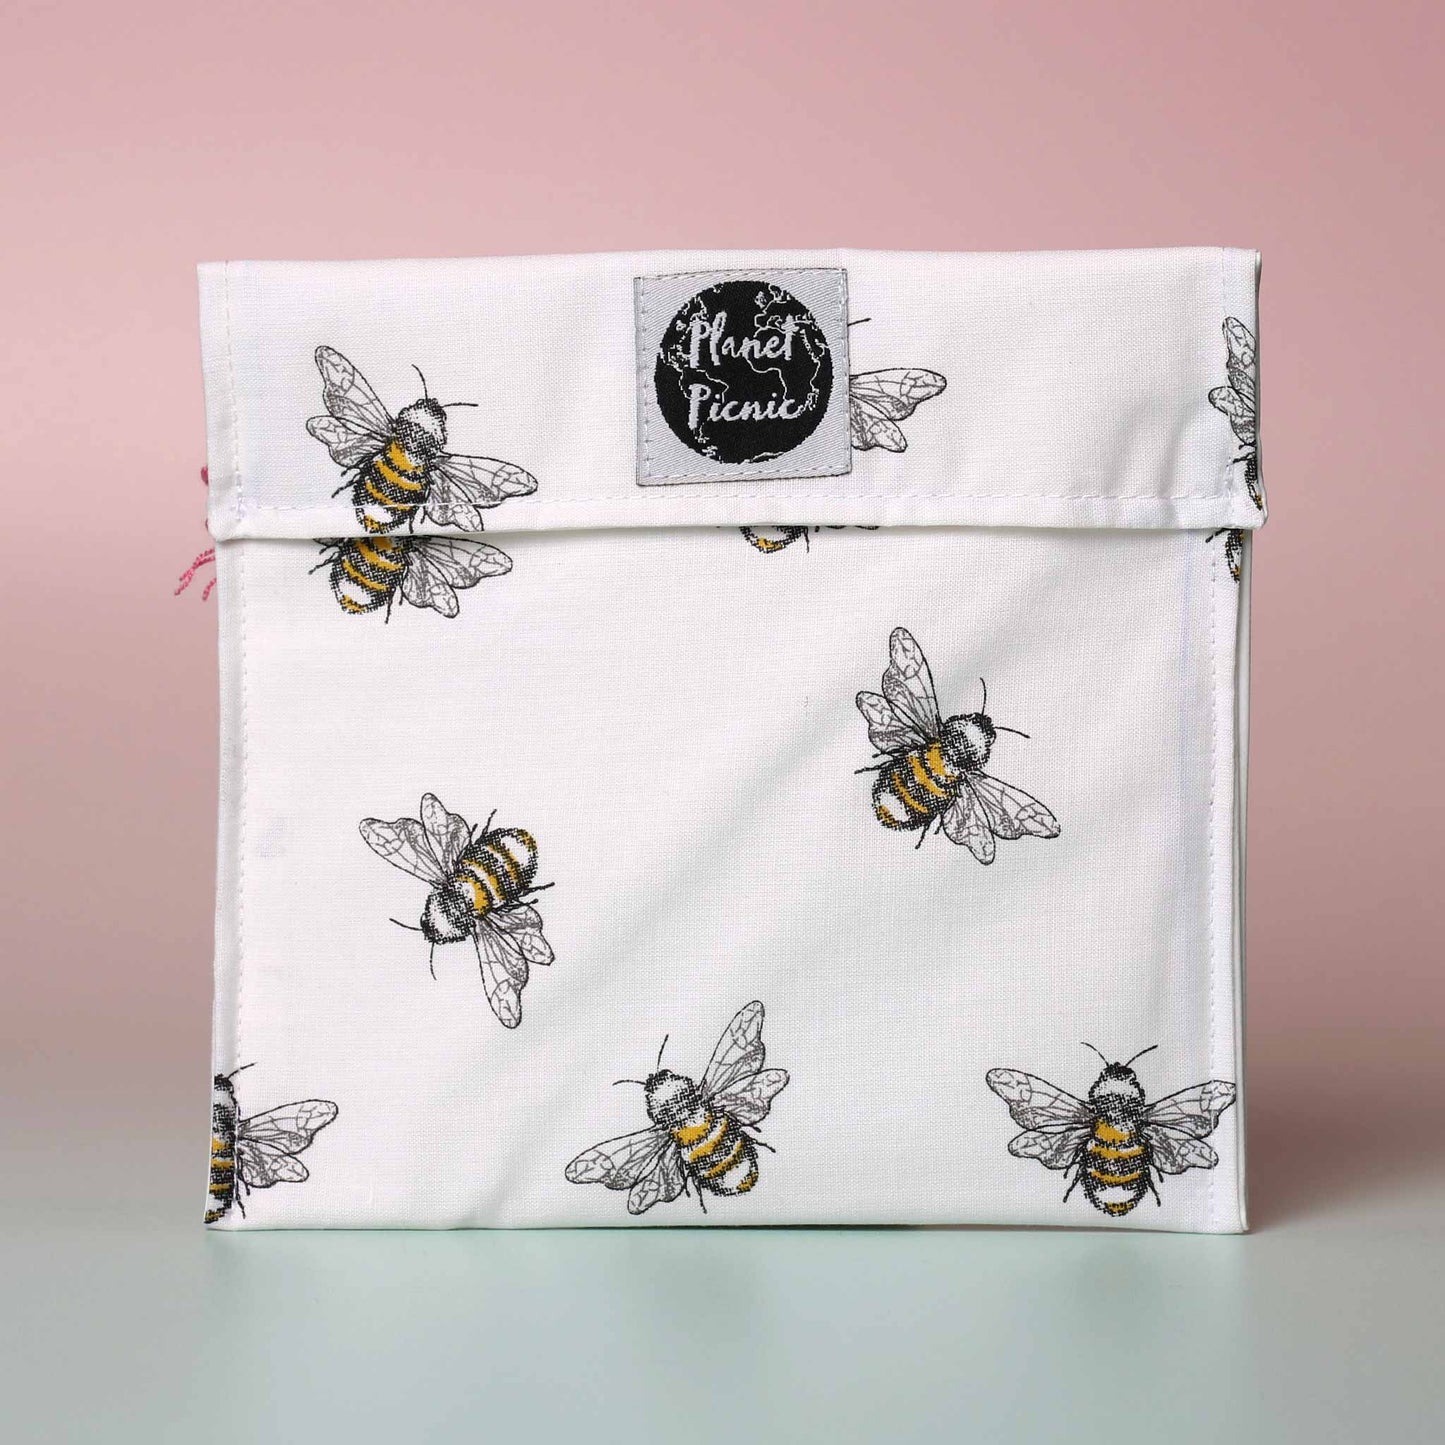 Planet Picnic - Reusable Sandwich Bag Bees